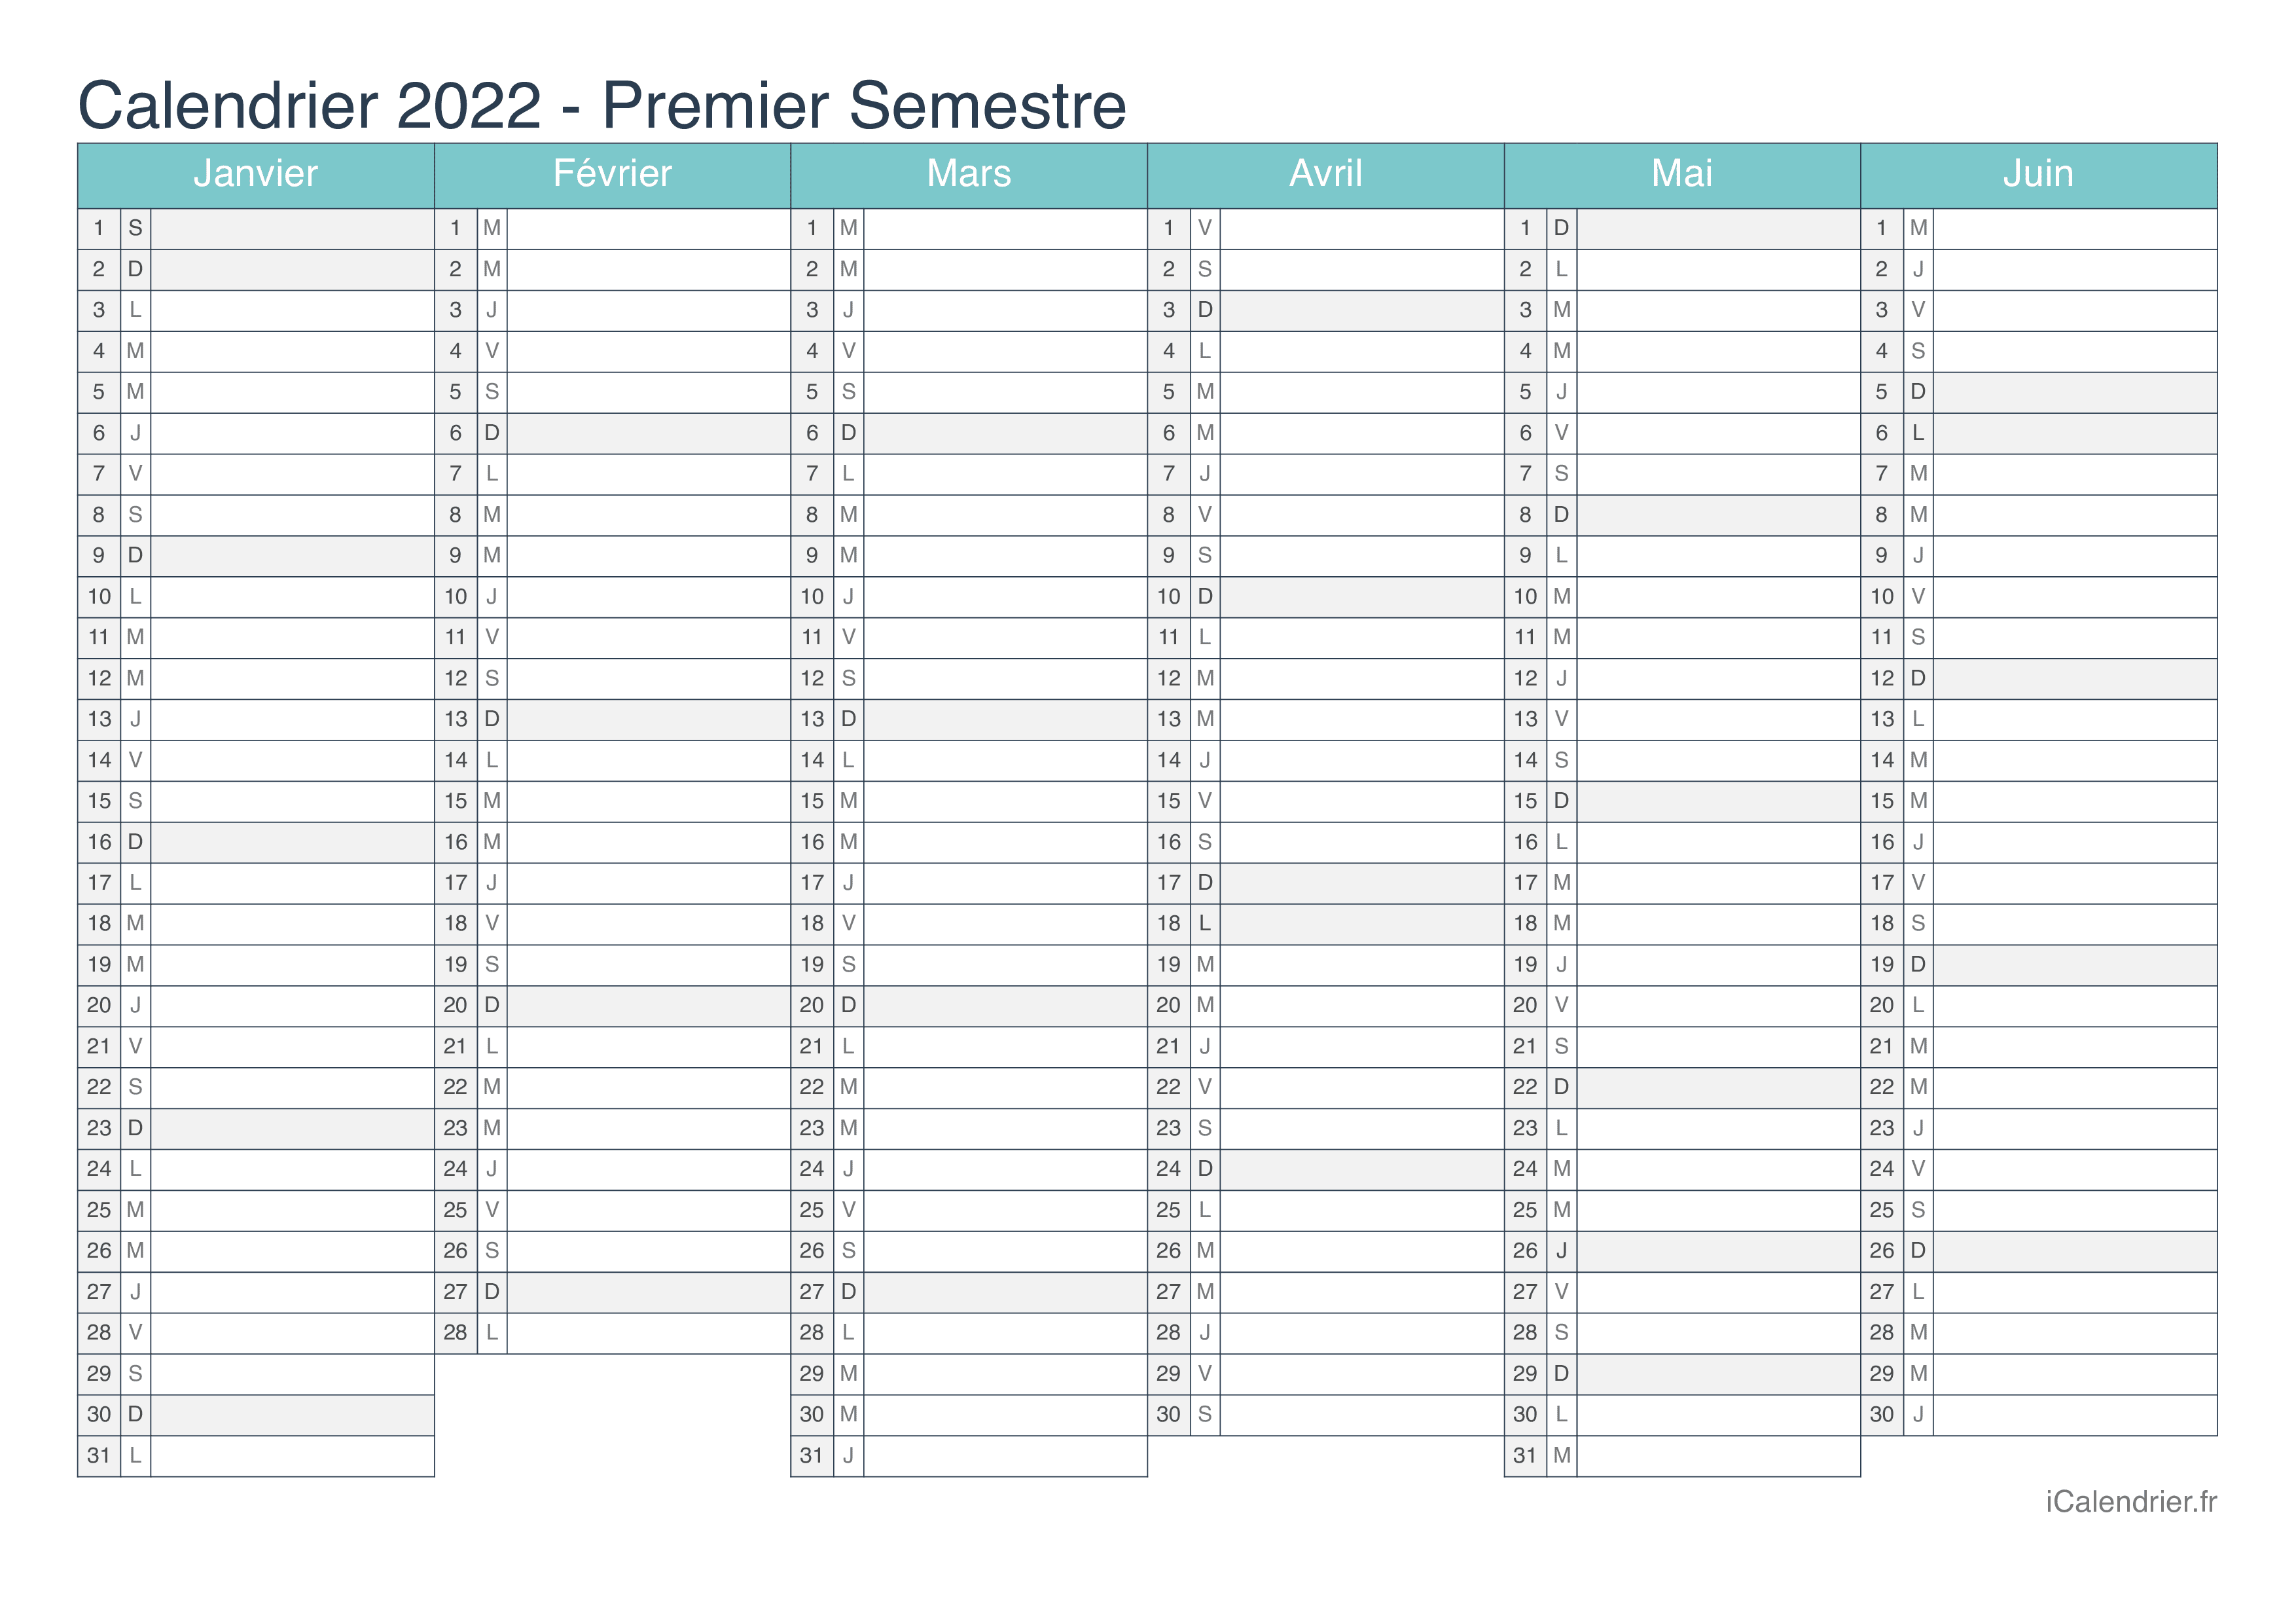 Calendrier Premier Semestre 2022 Calendrier 2022 à imprimer PDF et Excel   iCalendrier